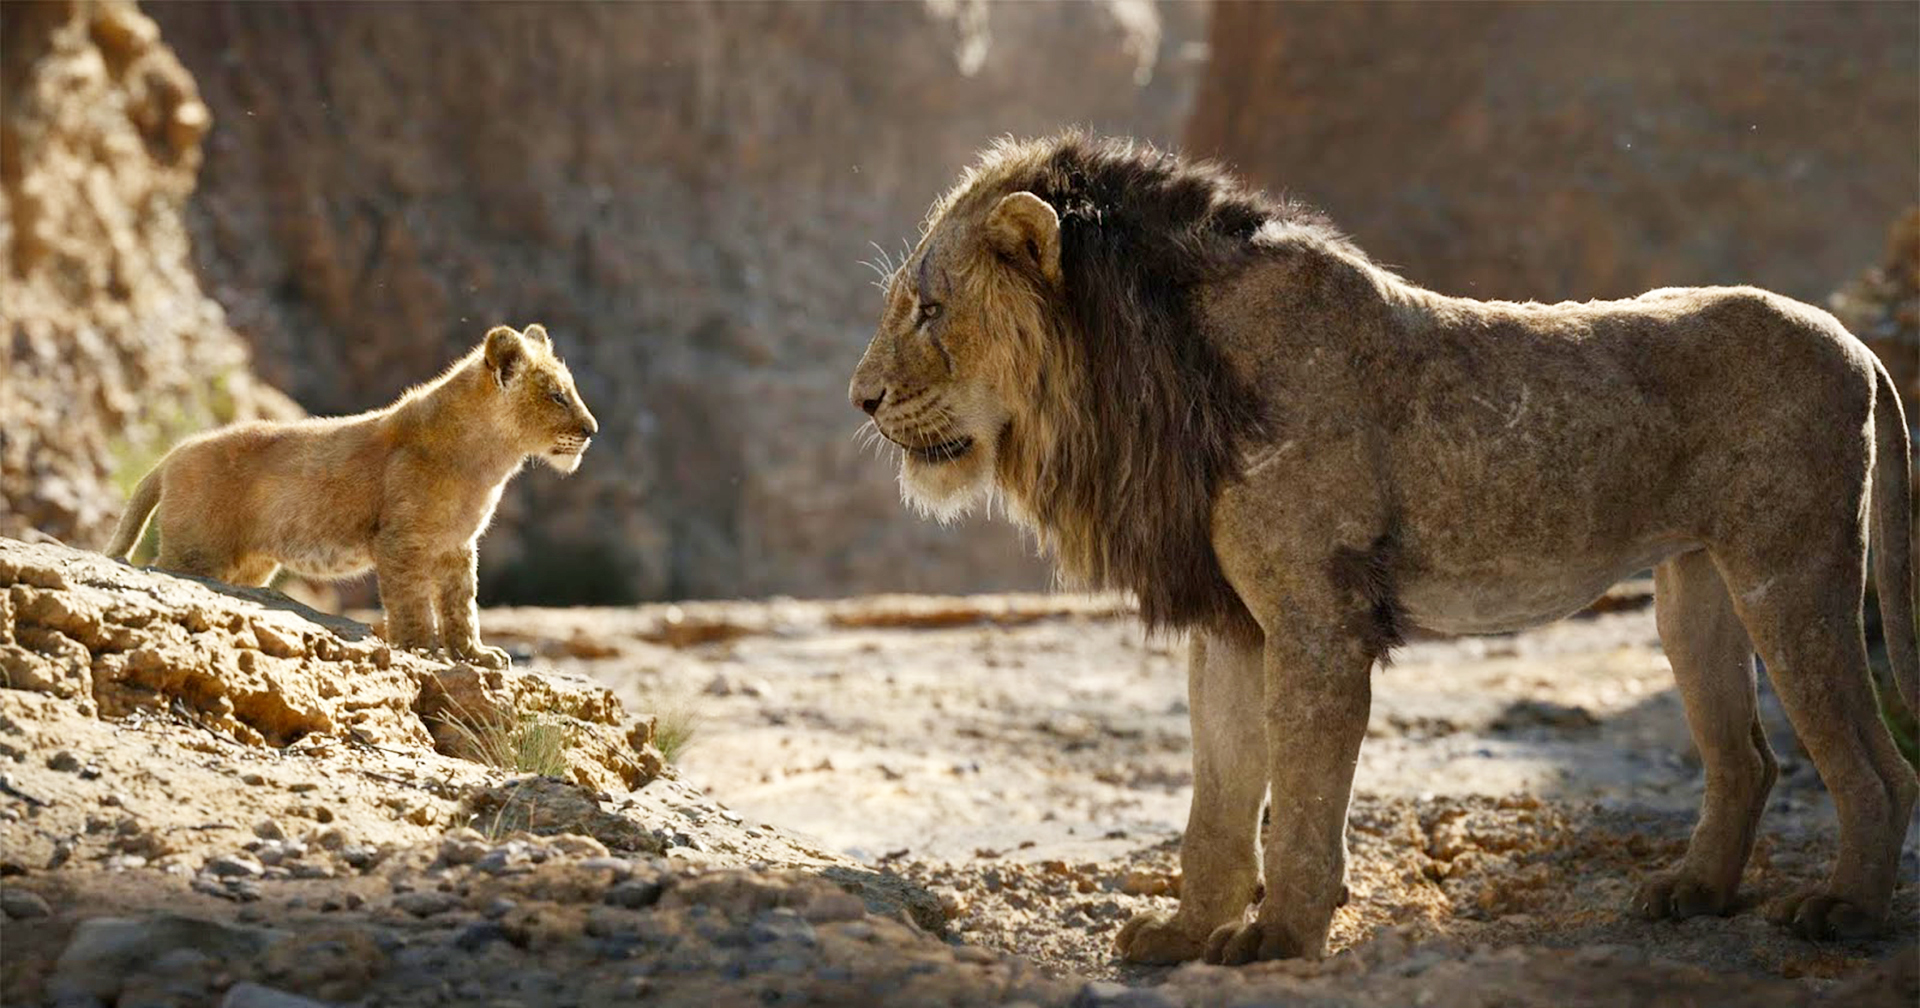 ประธาน Disney ต้องการให้ ‘The Lion King’ กลายเป็นแฟรนไชส์มหากาพย์เหมือน ‘Star Wars’